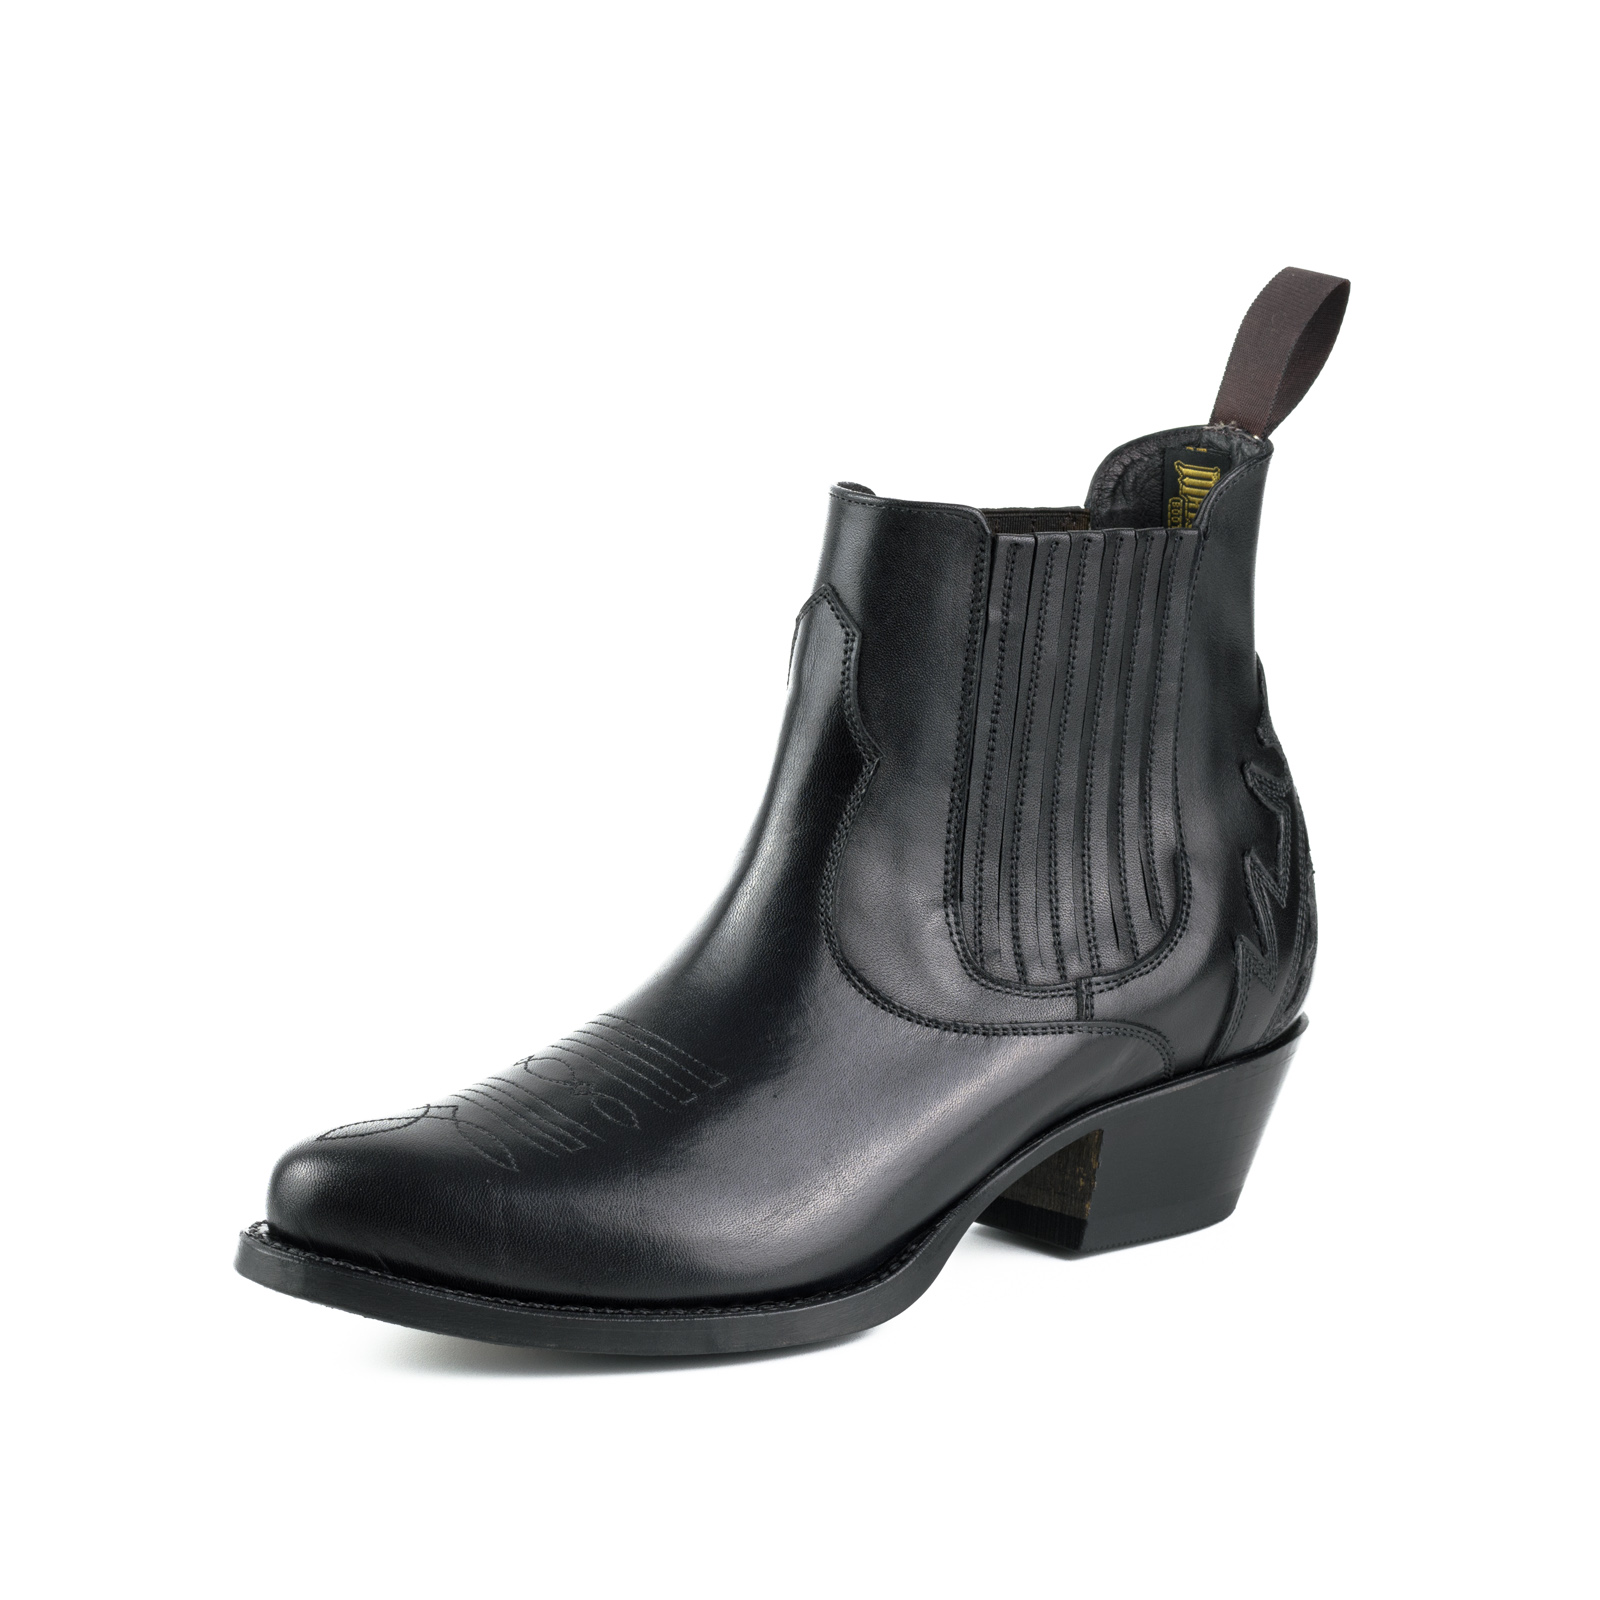 mayura-boots-modelo-marilyn-2487-negro-1